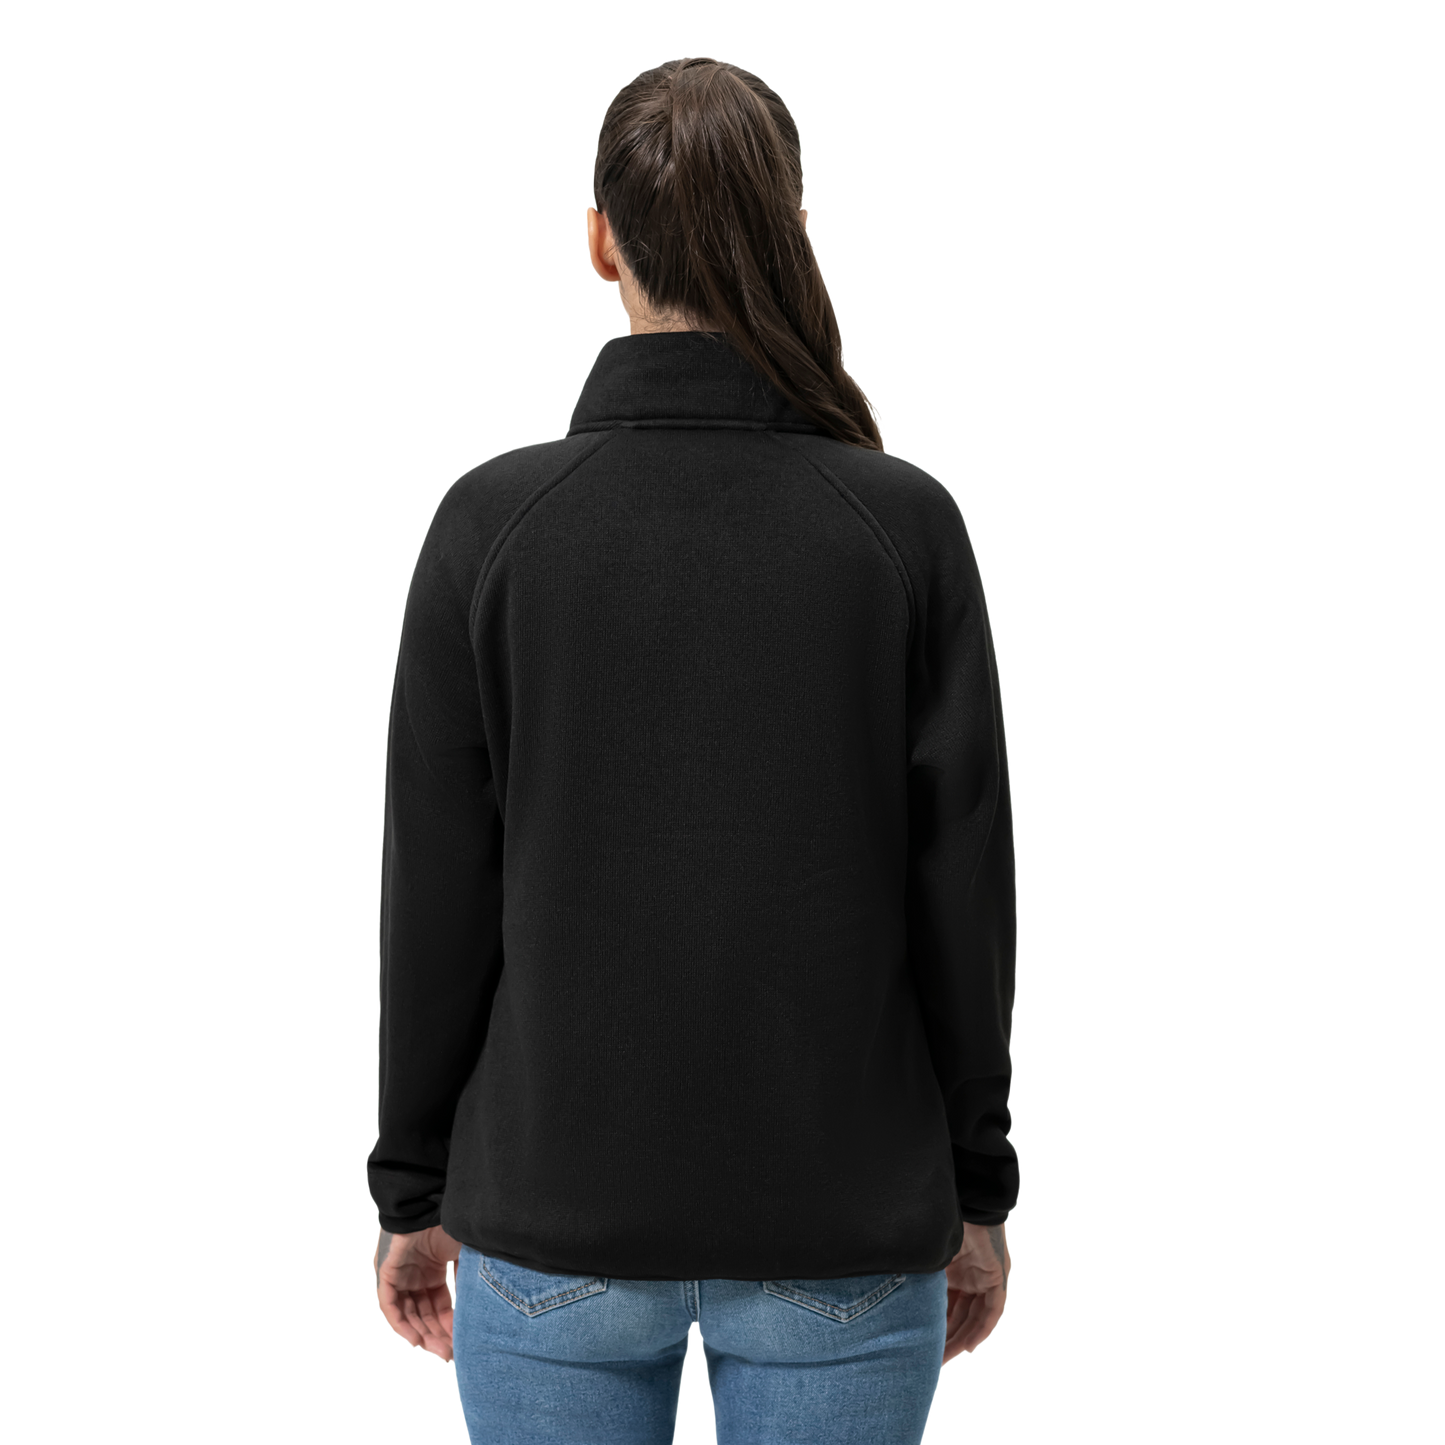 Heated Fleece Jacket for Women – Weston Store